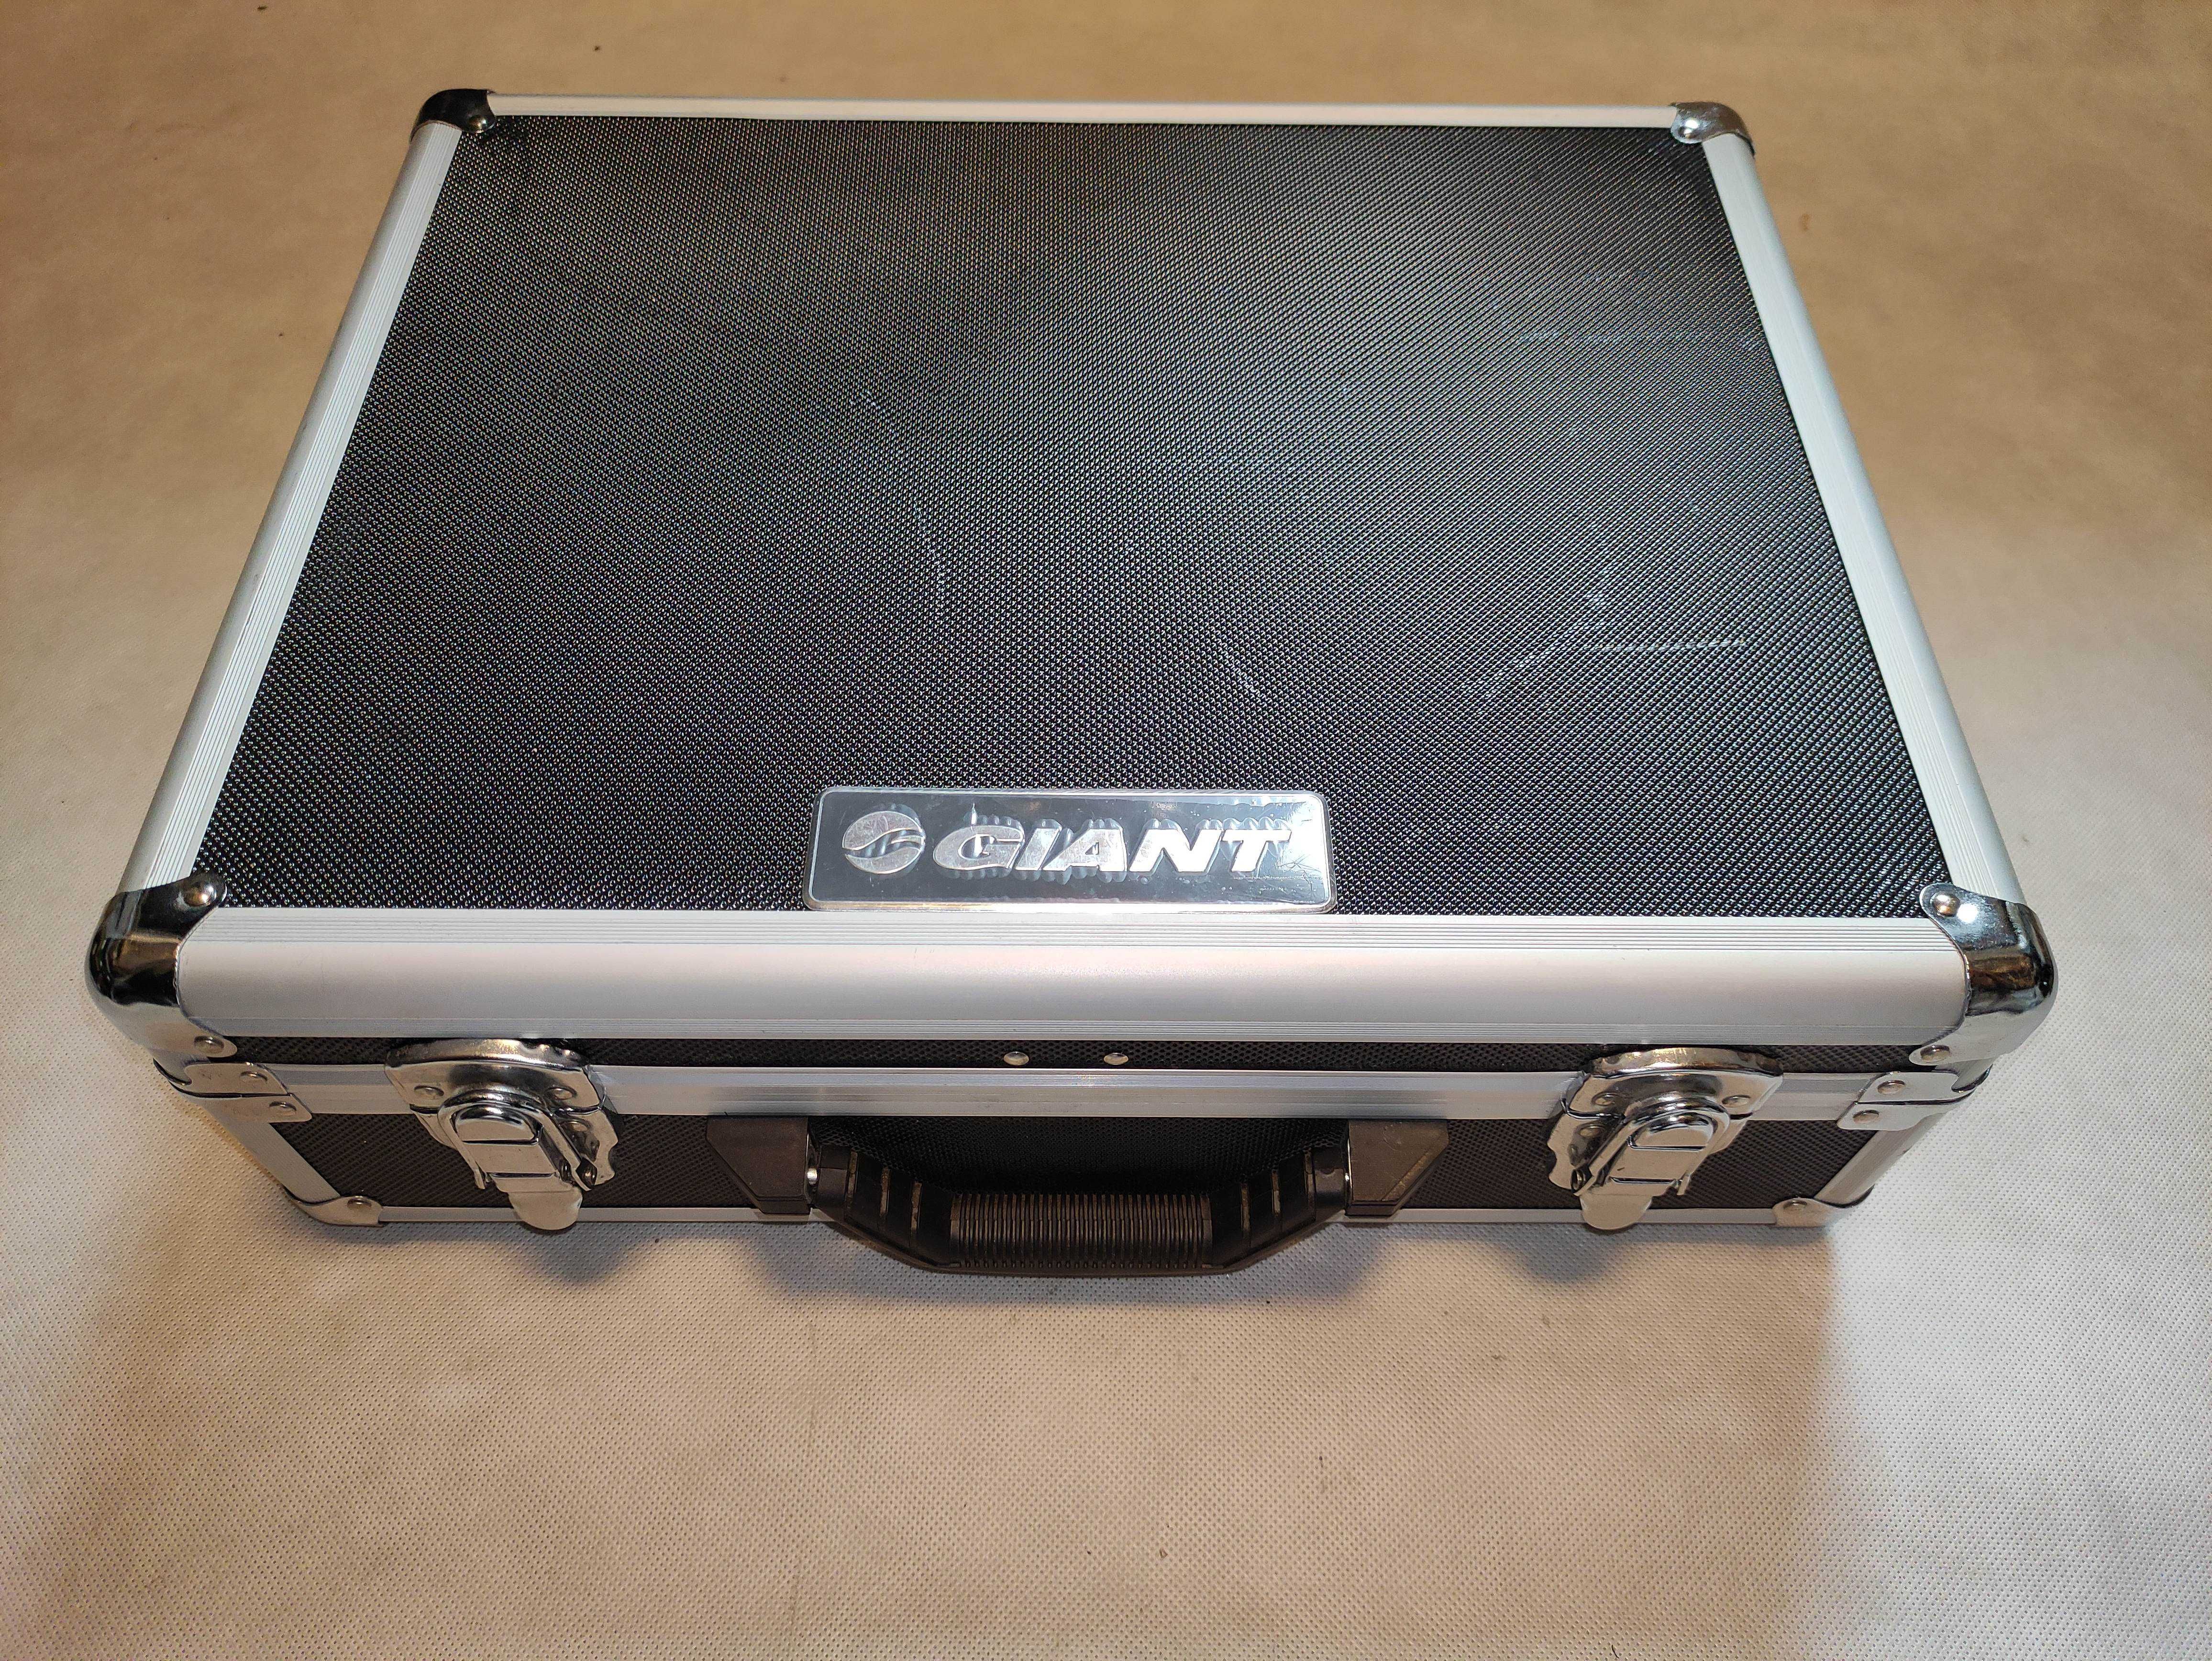 Firmowa walizka serwisowa GIANT do rowerów elektrycznych narzędzia